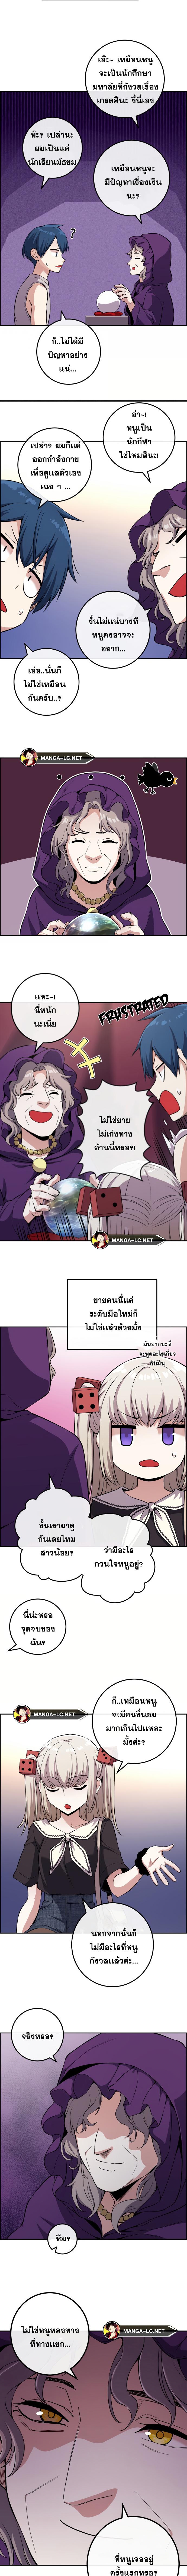 อ่านมังงะ Webtoon Character Na Kang Lim ตอนที่ 120/0_1.jpg